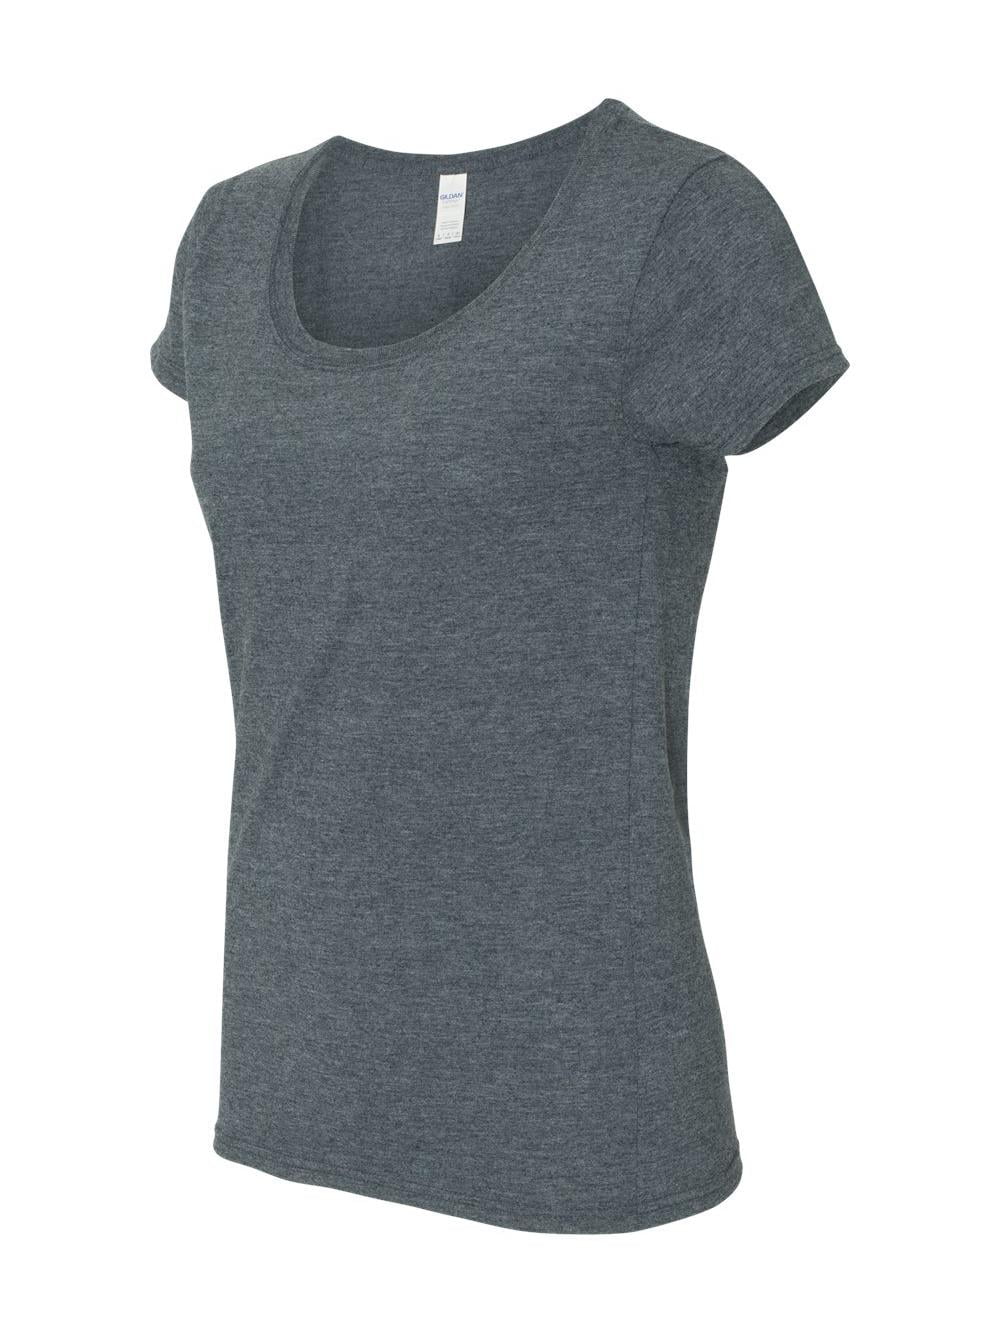 Gildan - Softstyle Women's Deep Scoop Neck T-Shirt - 64550L - Walmart.com